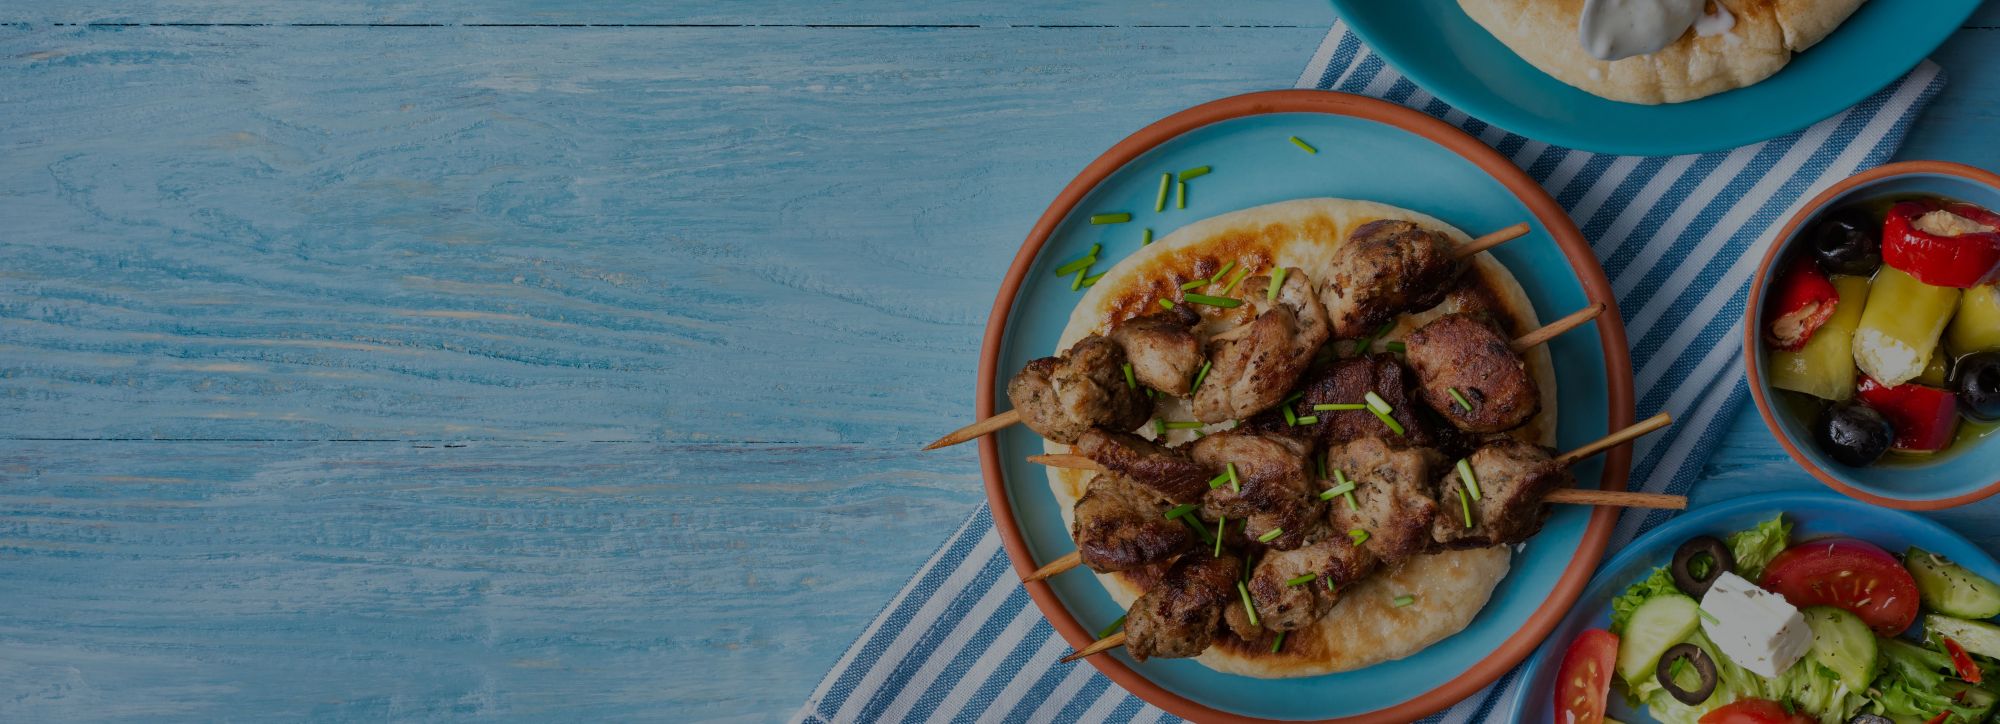 Restaurant Poseidon - Genießen Sie die leckere griechische Küche!